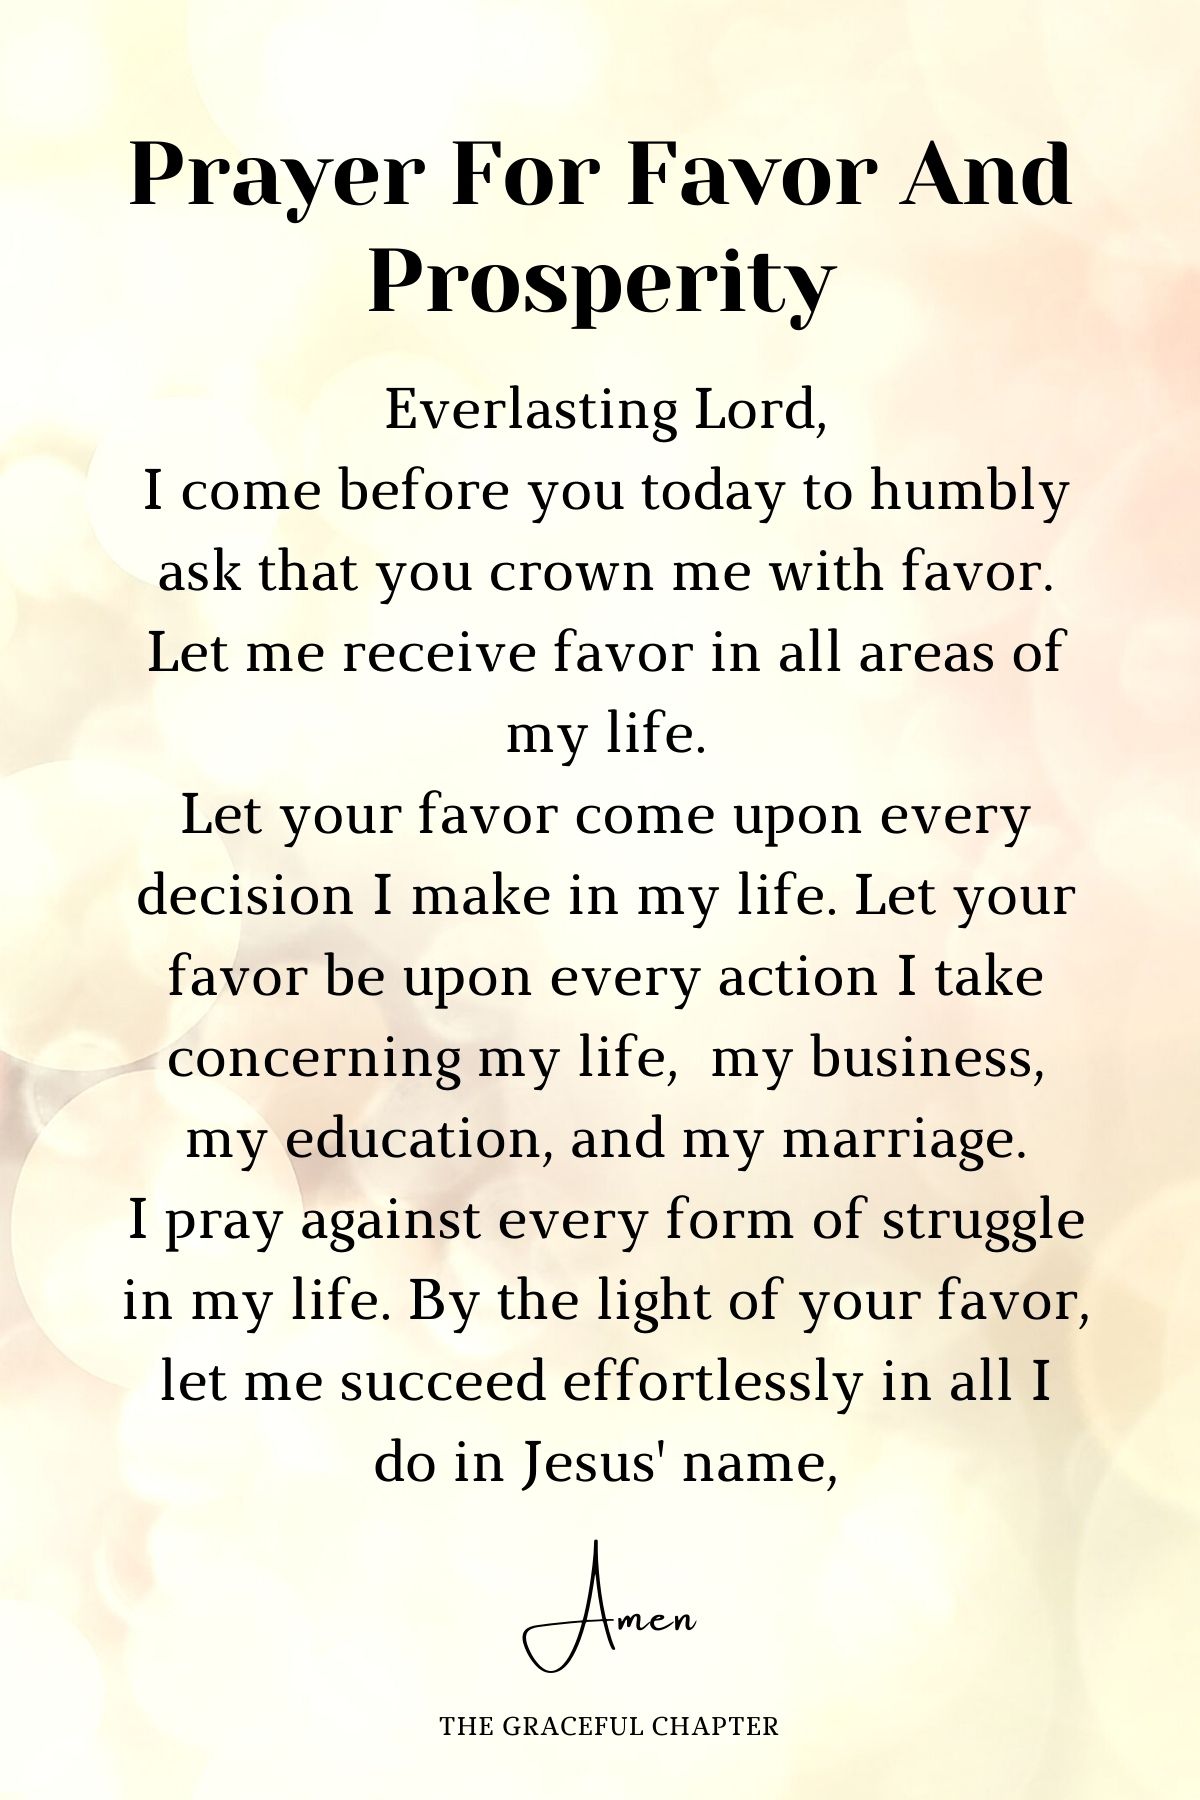 Prayer for favor and prosperity